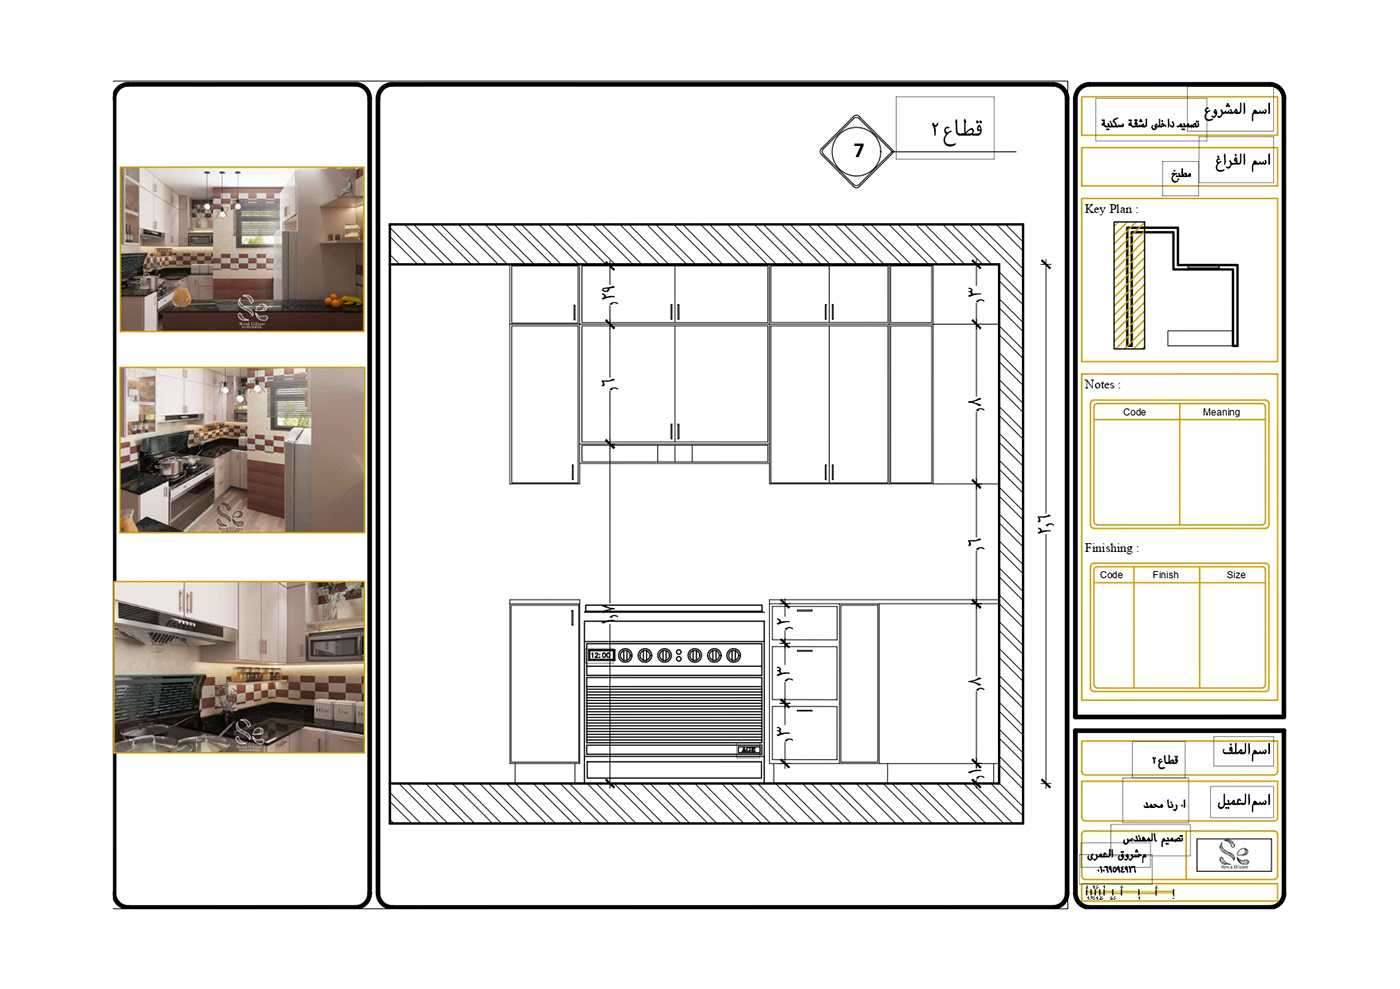 3ds max architecture design Interior interior design  kitchen kitchen design modern Modern Design Render